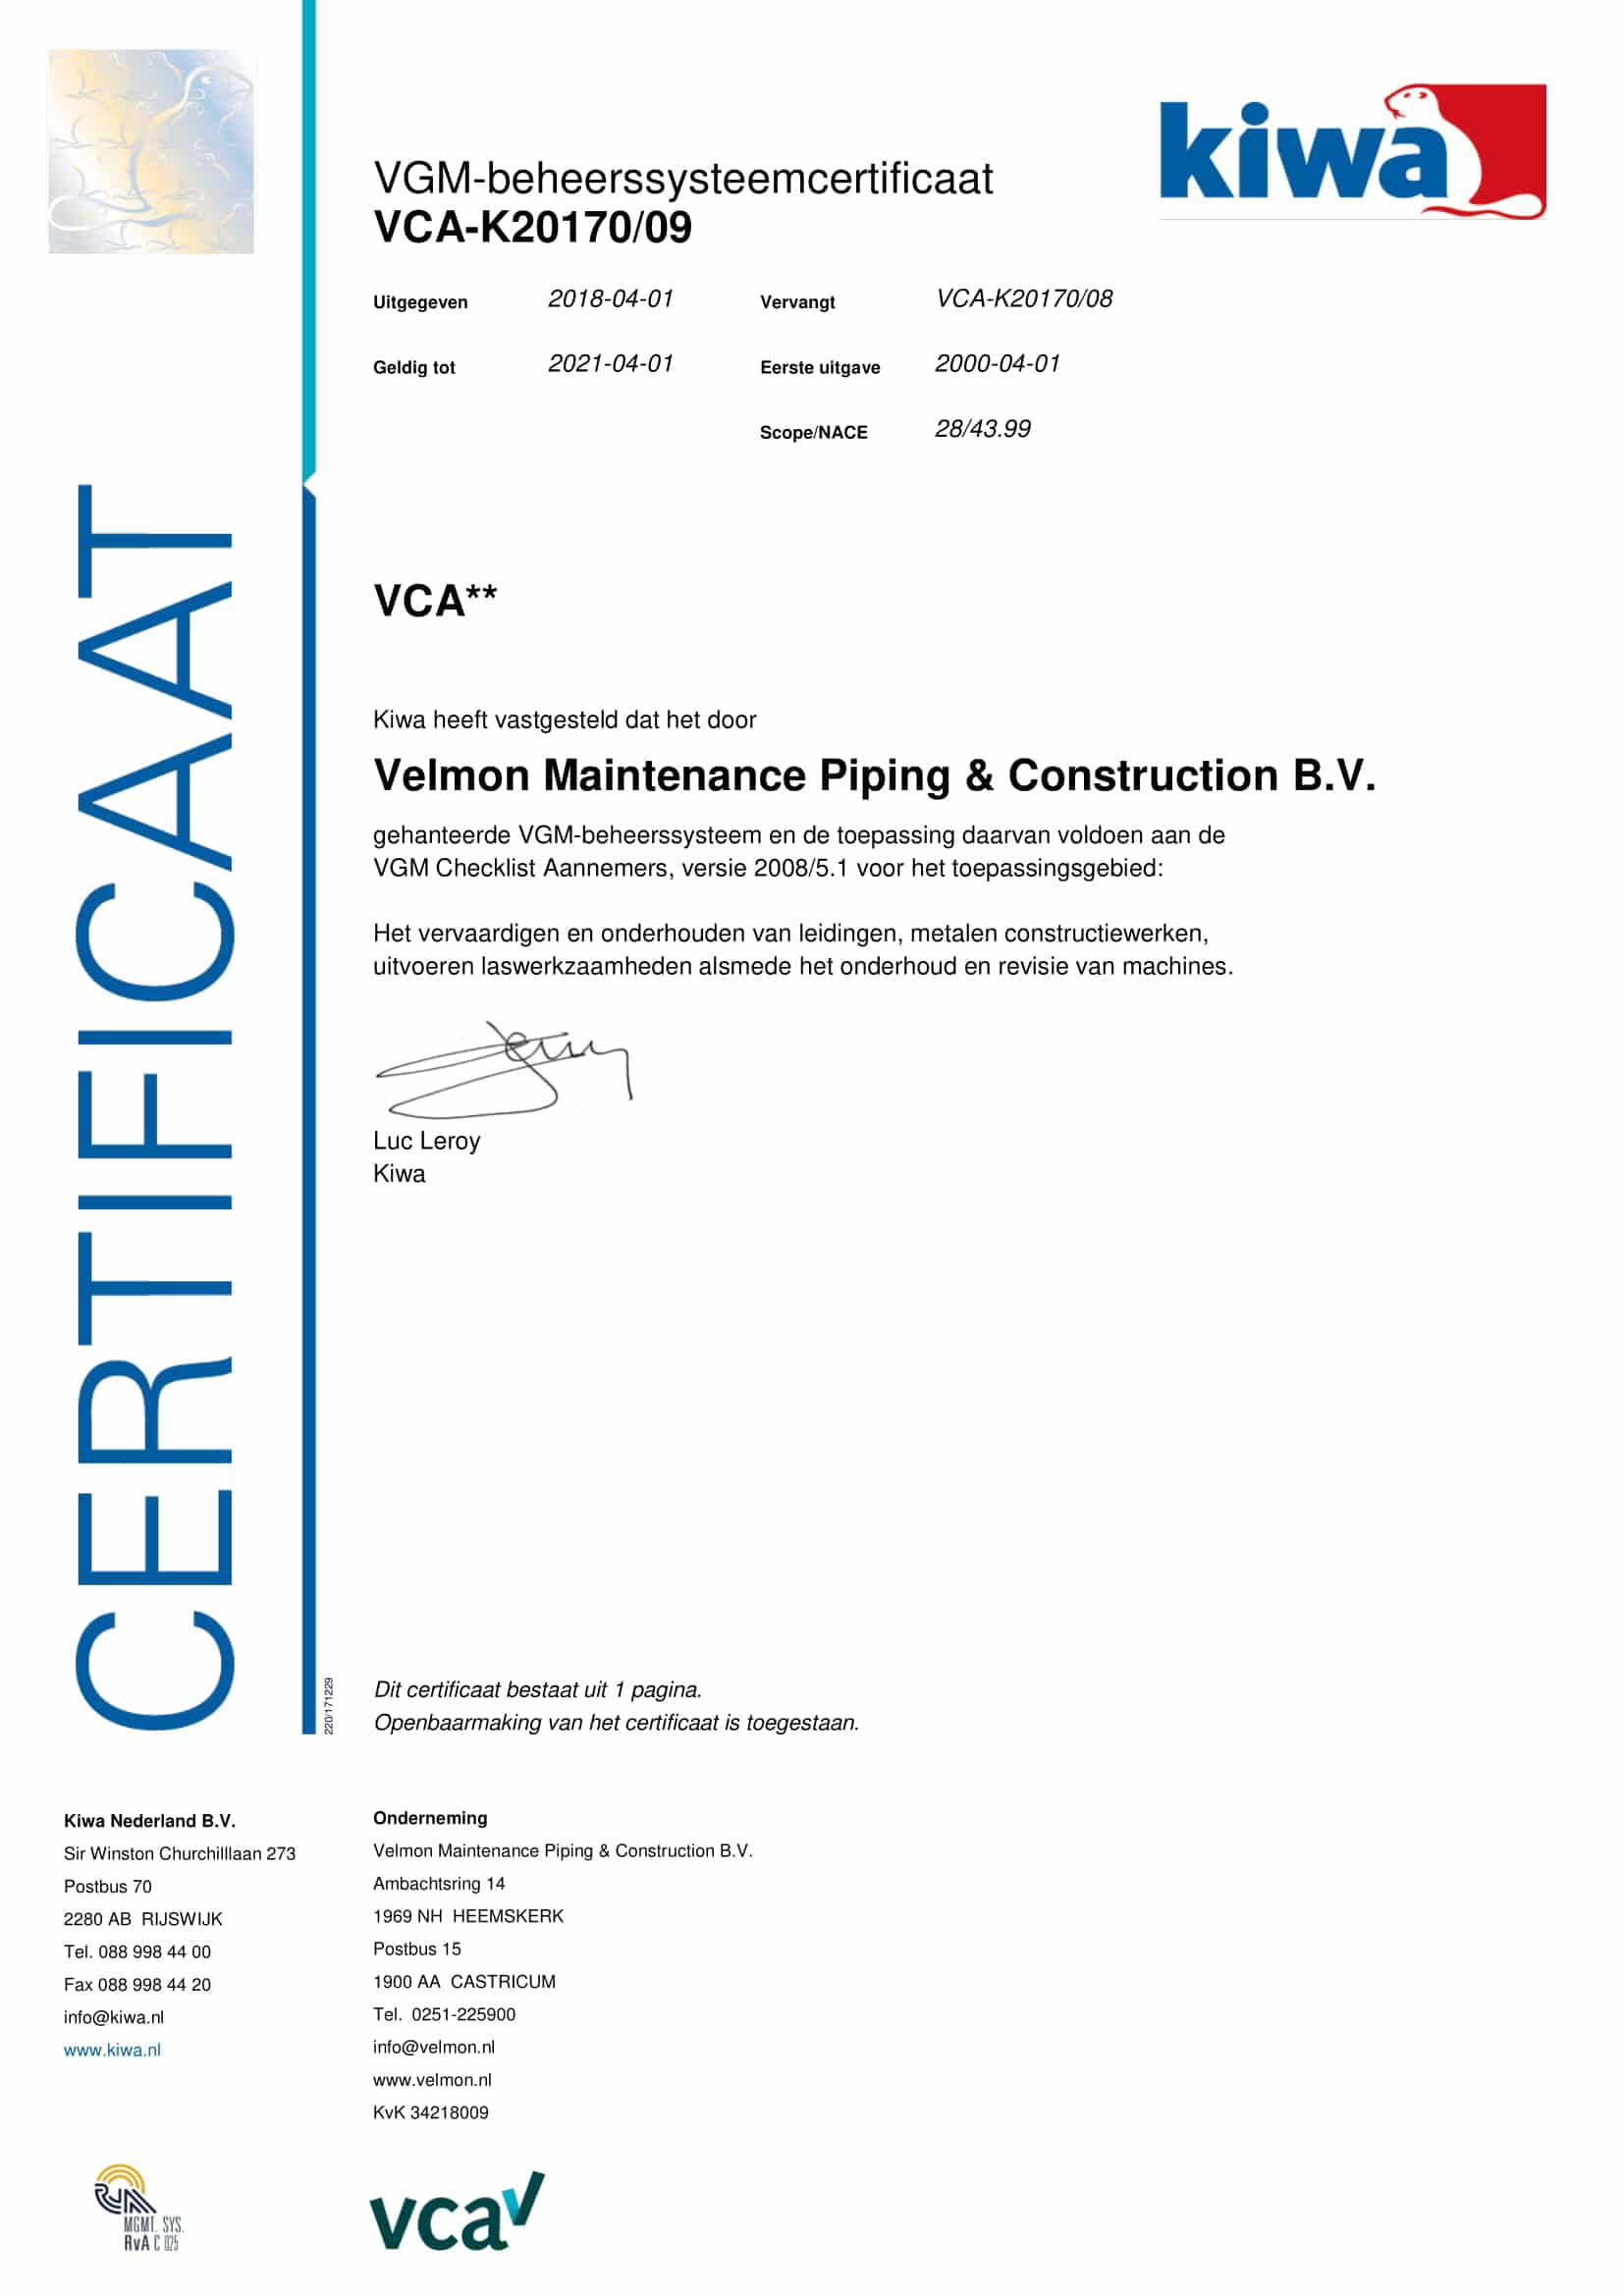 Certificering en beleid VCA** Velmon MPC voeldoet aan de eisen VCA**